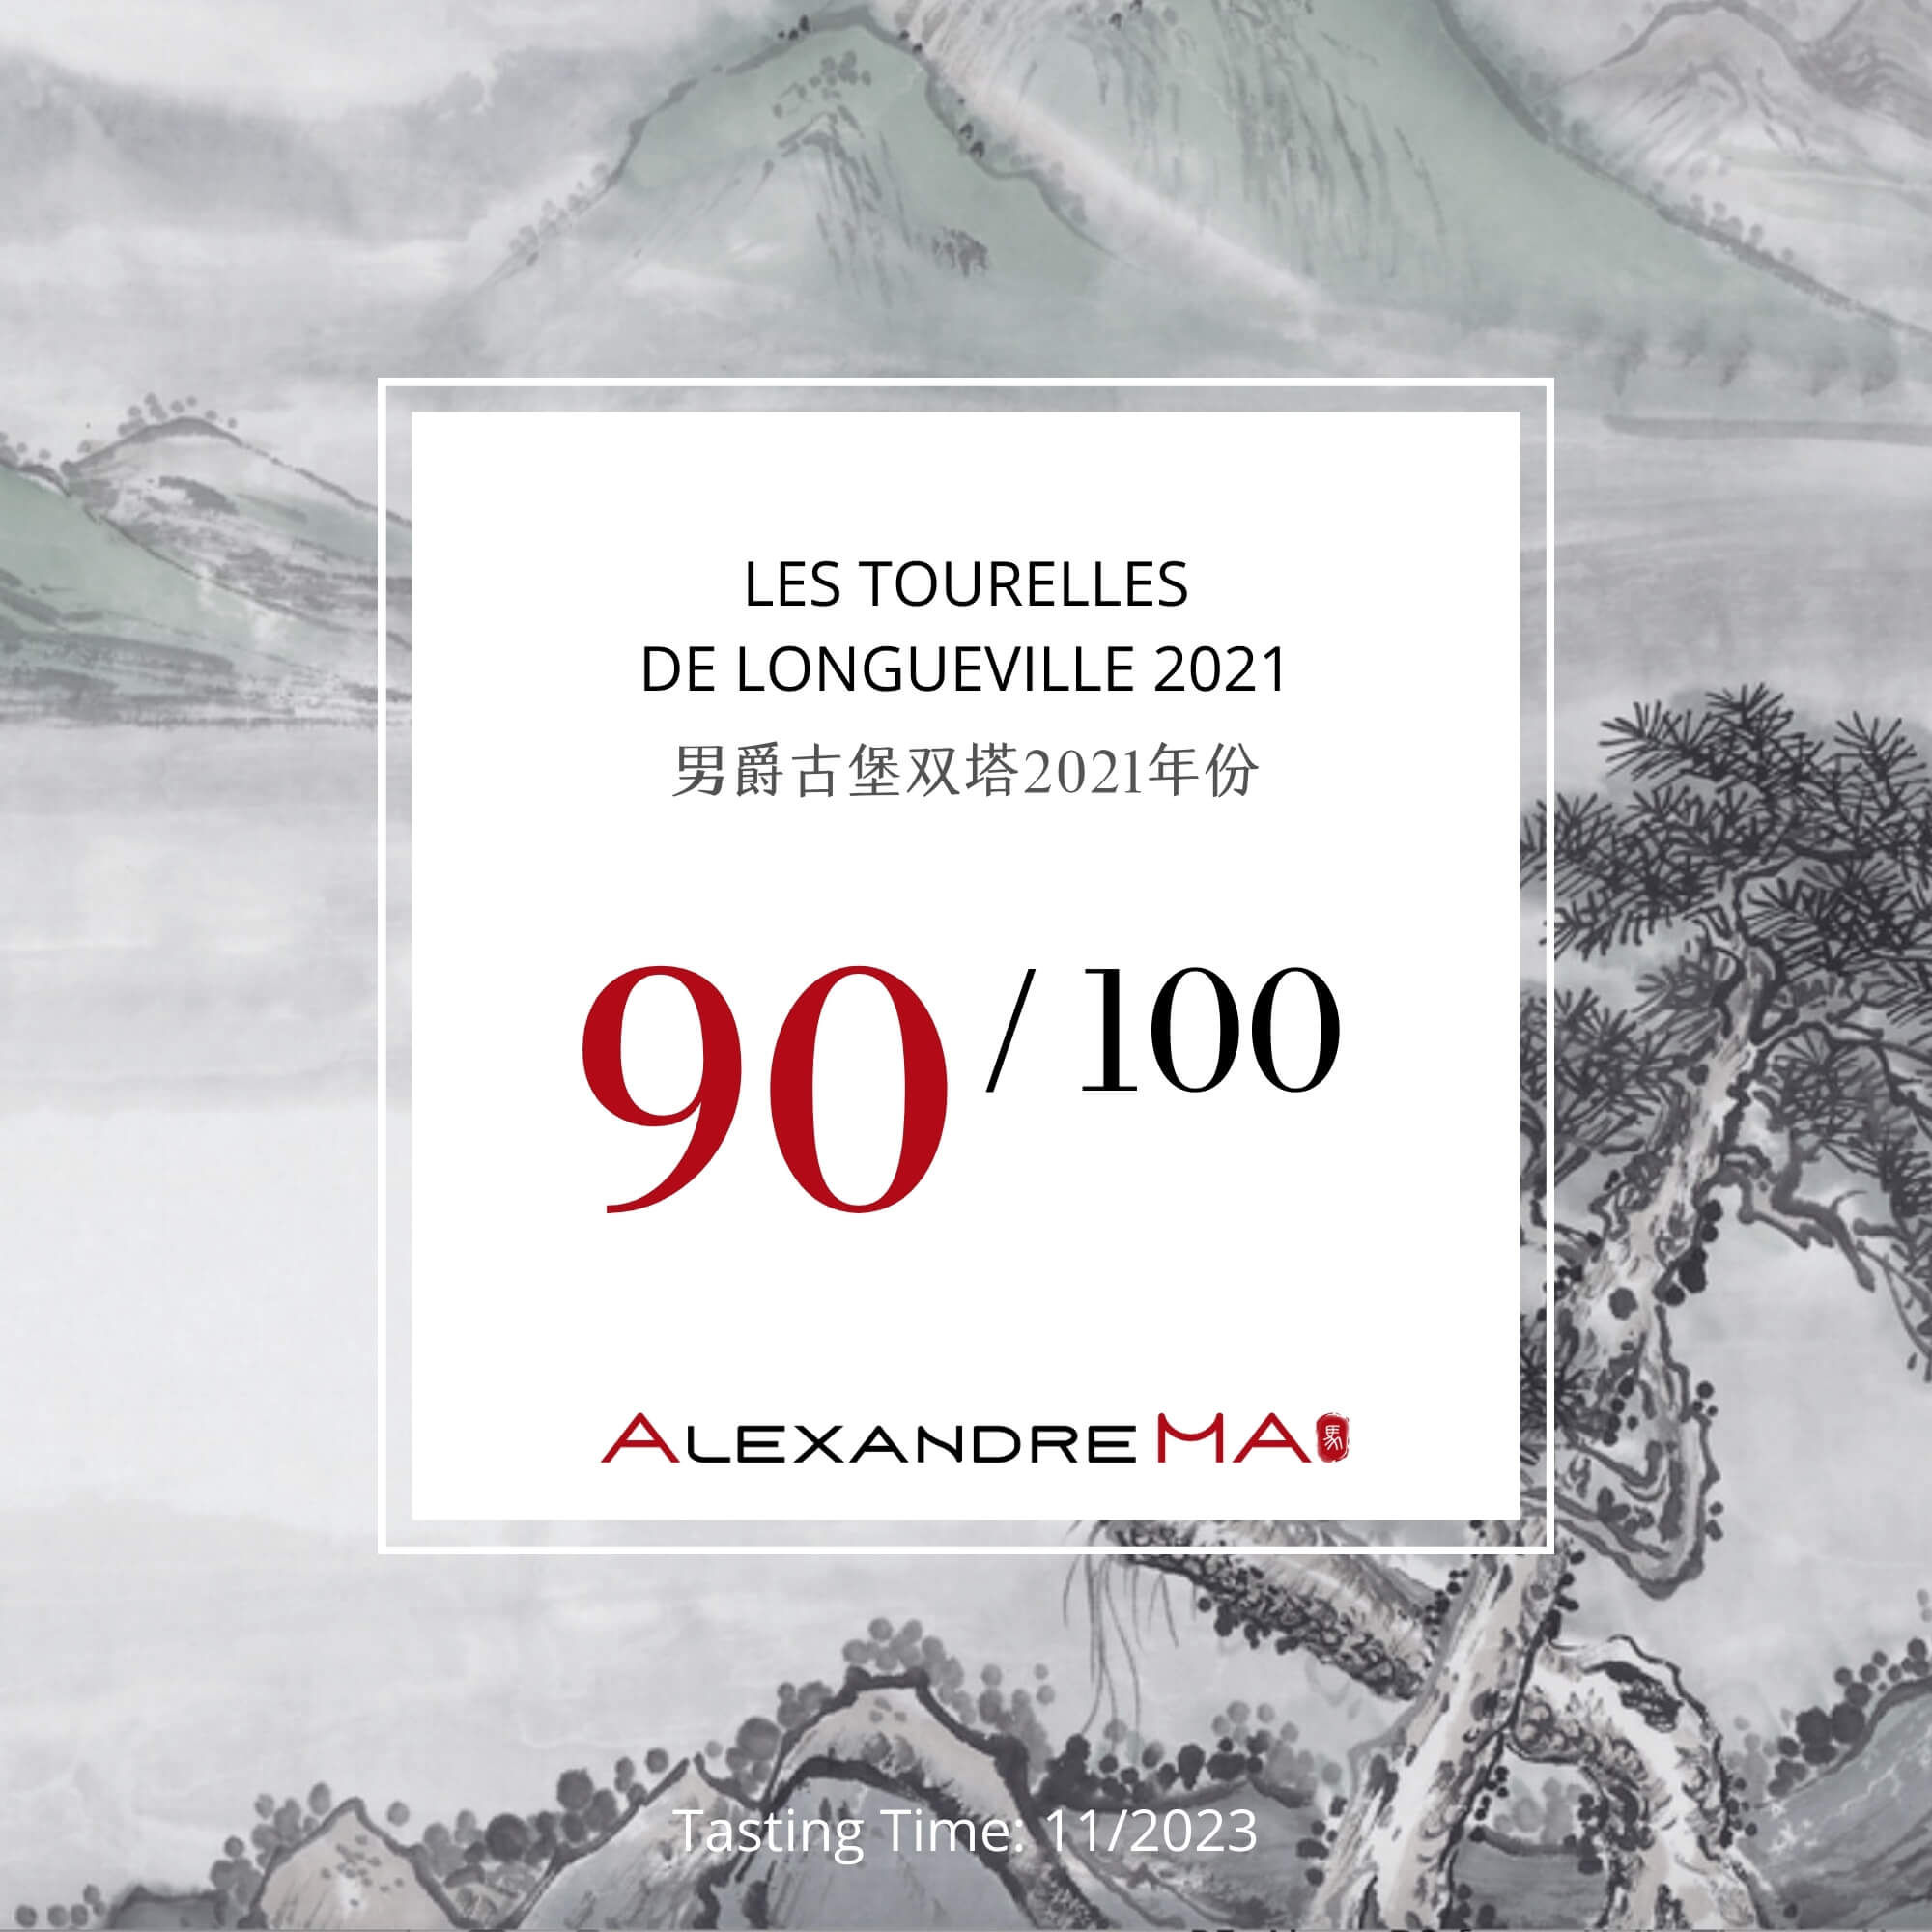 Les Tourelles de Longueville 2021 男爵古堡双塔 - Alexandre Ma